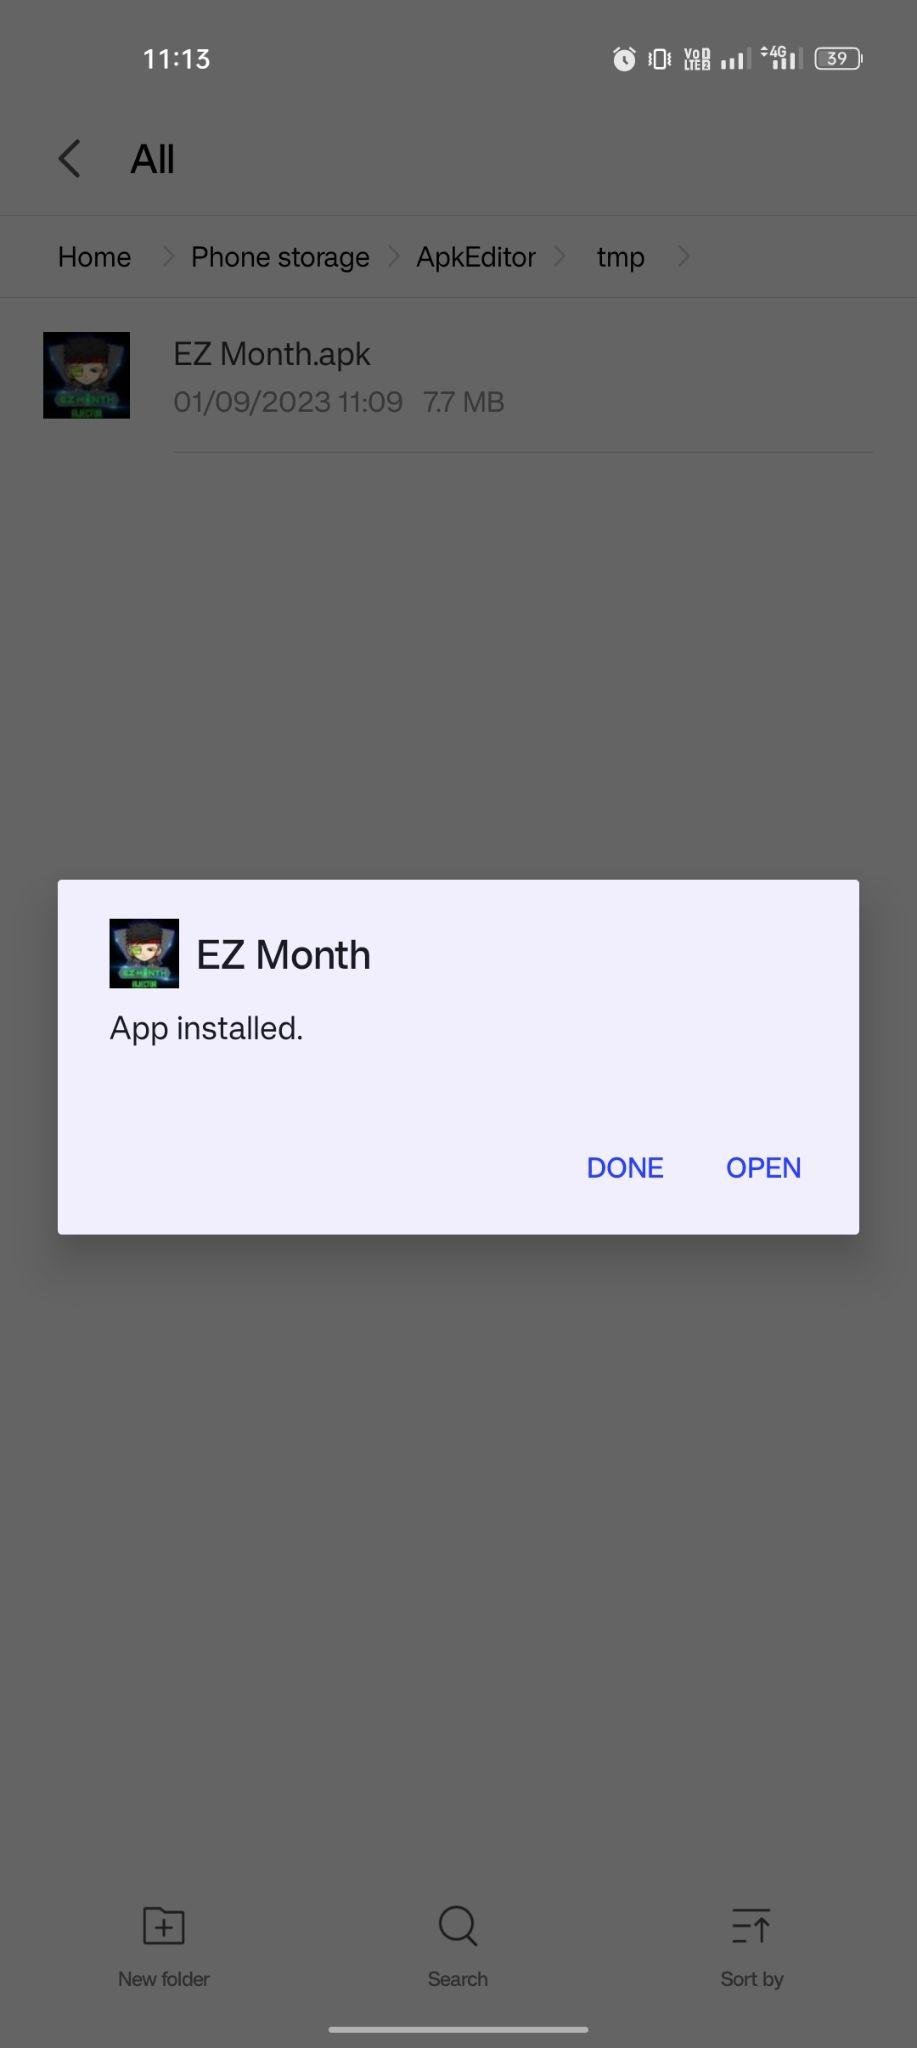 EZ Month apk installed